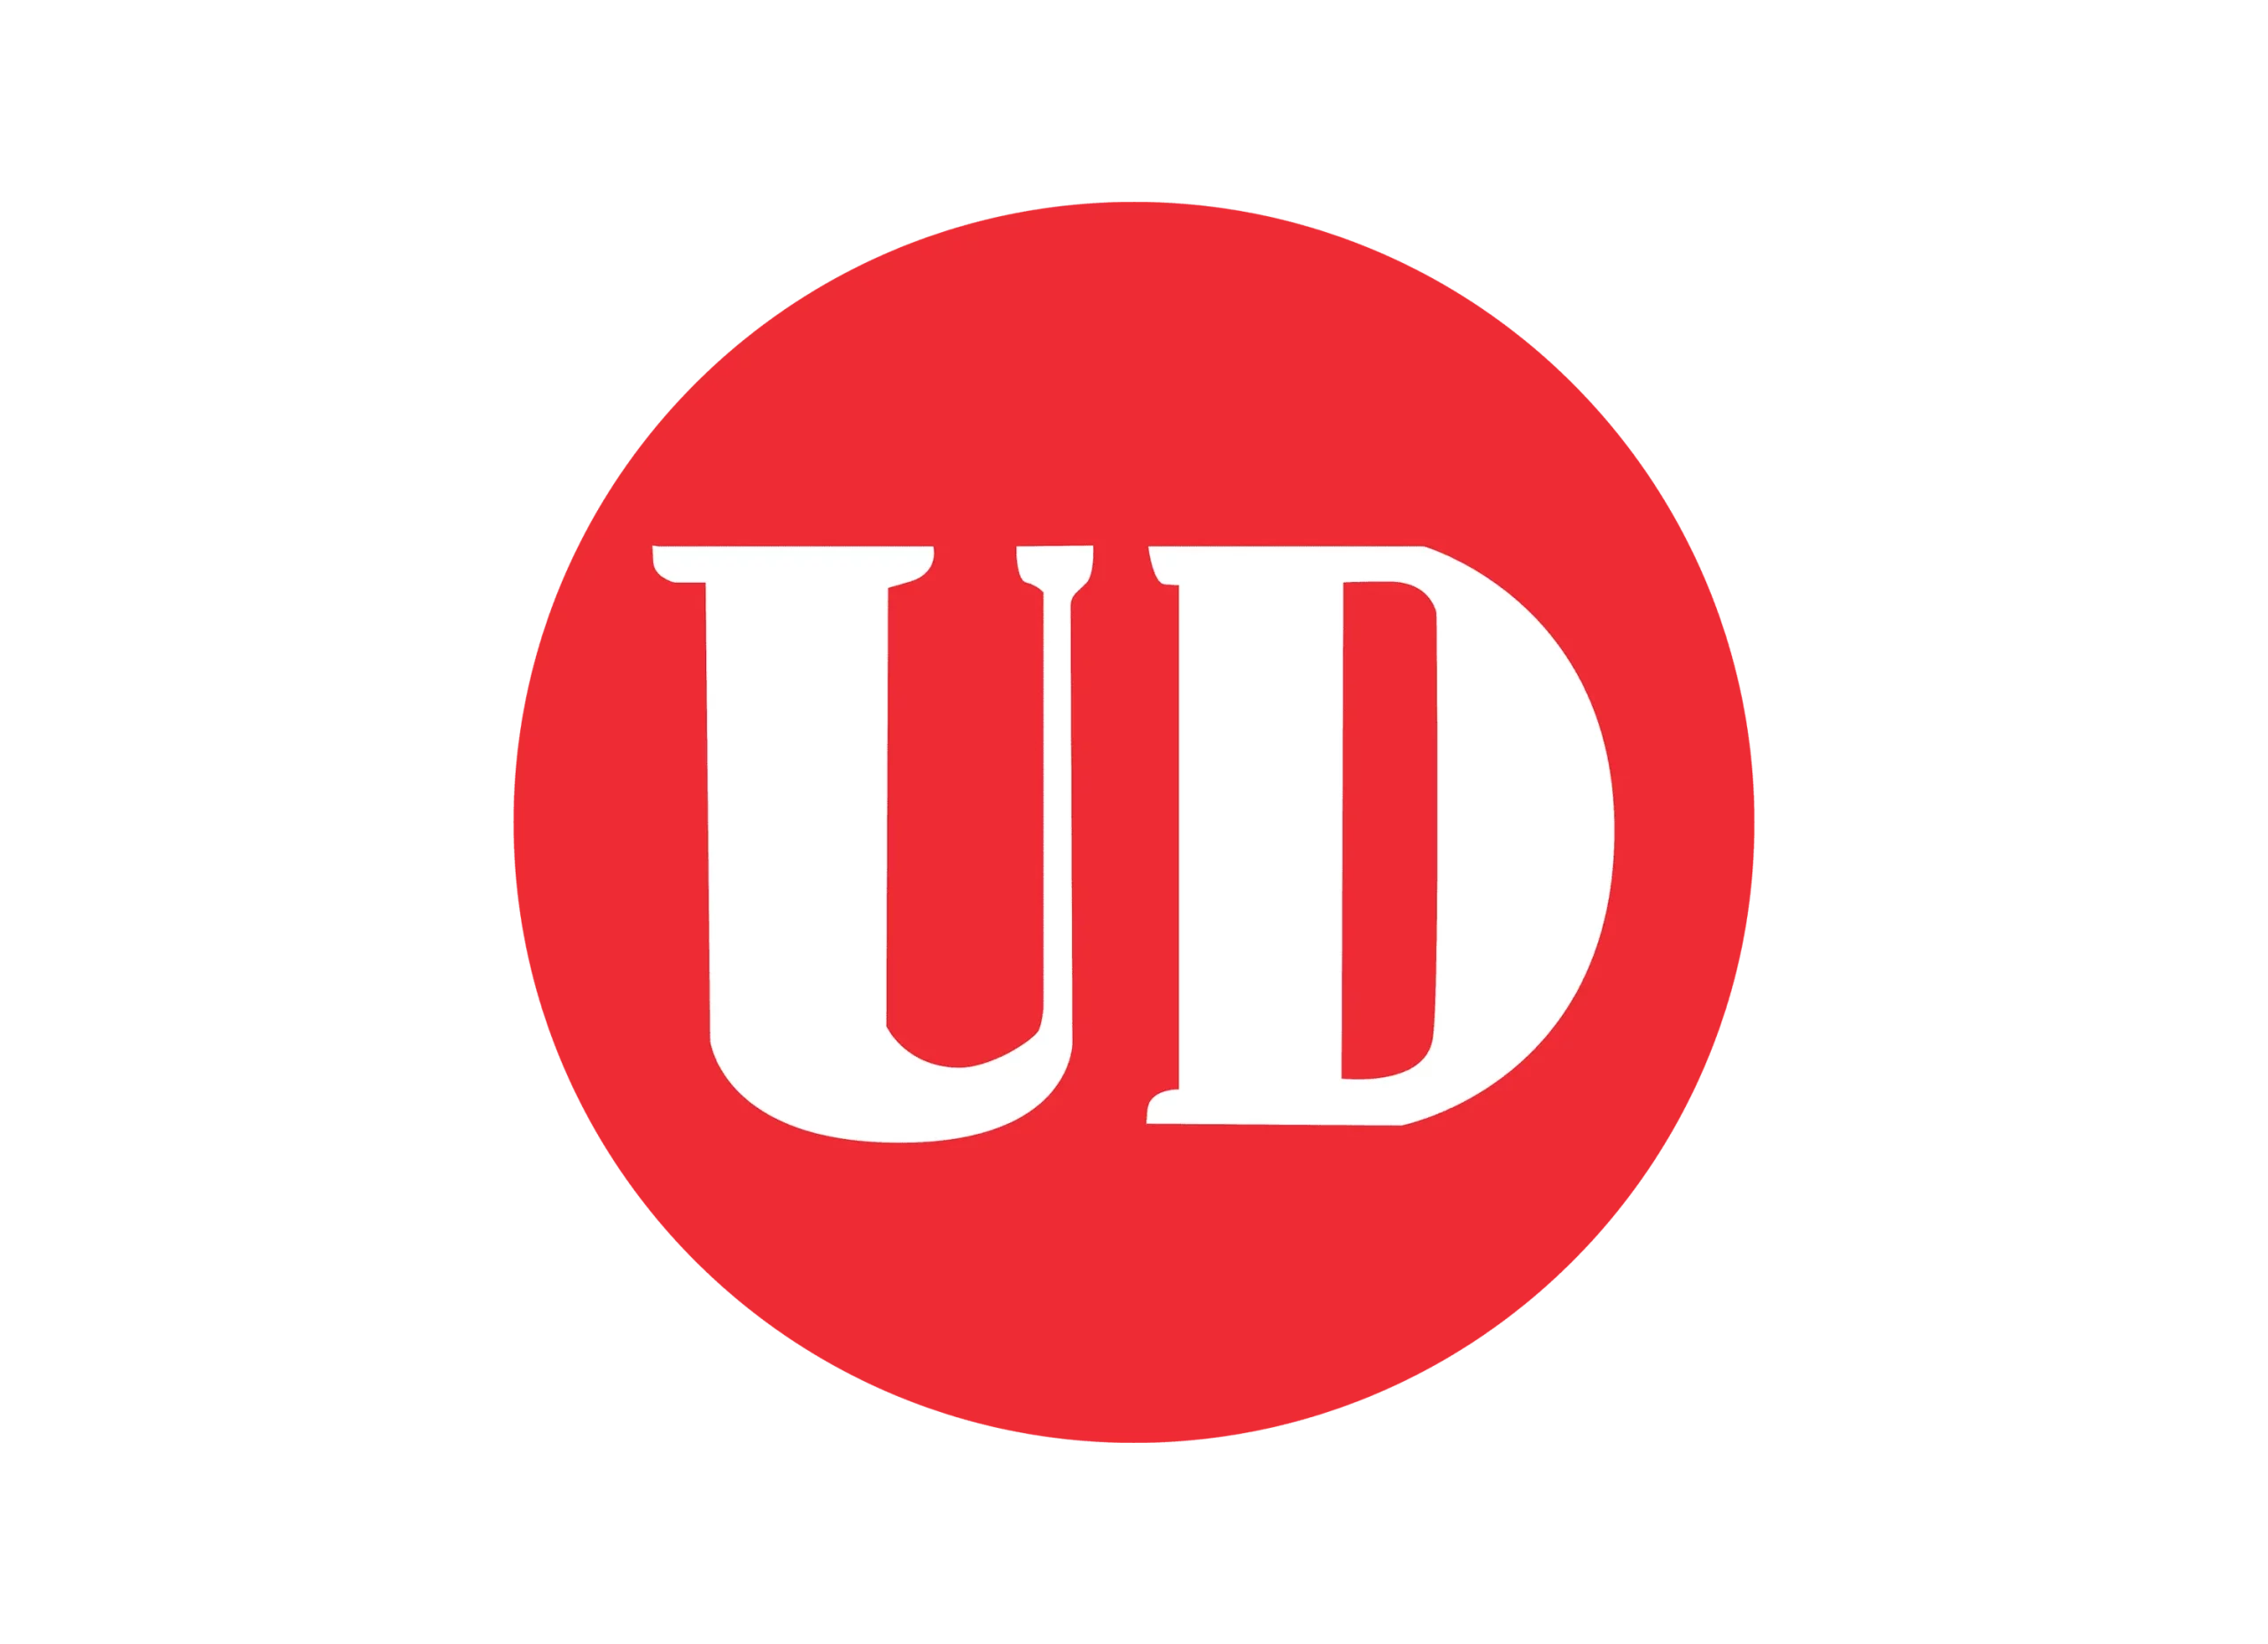 UD logo 1935-1999